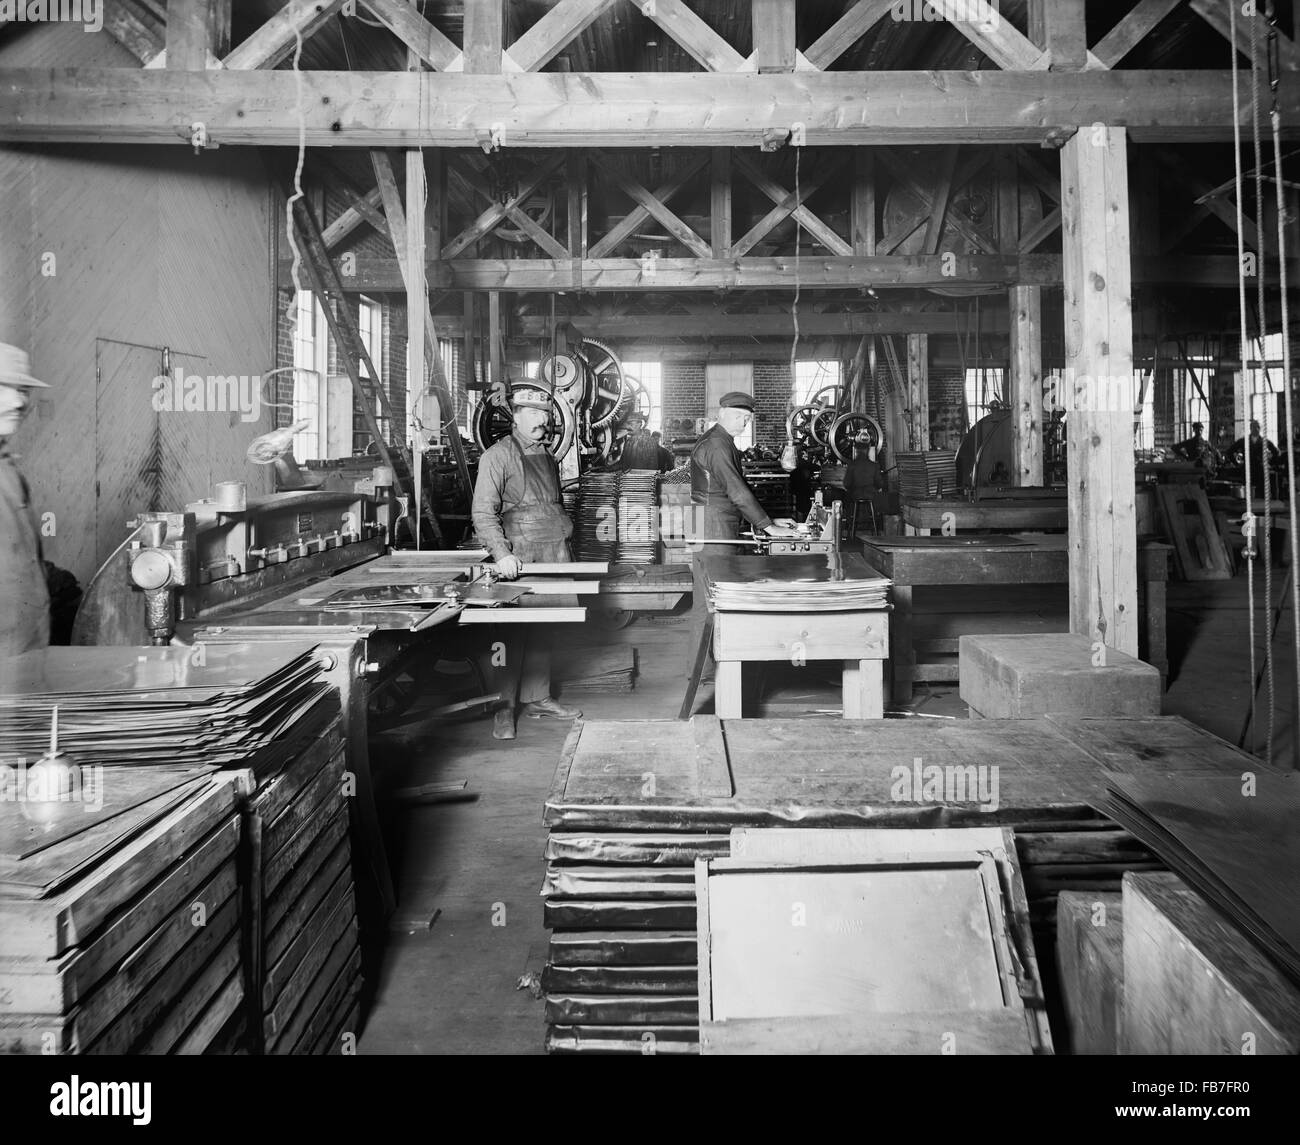 Les travailleurs de la salle des machines, Glazier Cuisinière Company, Chelsea, Michigan, USA, 1905 Banque D'Images